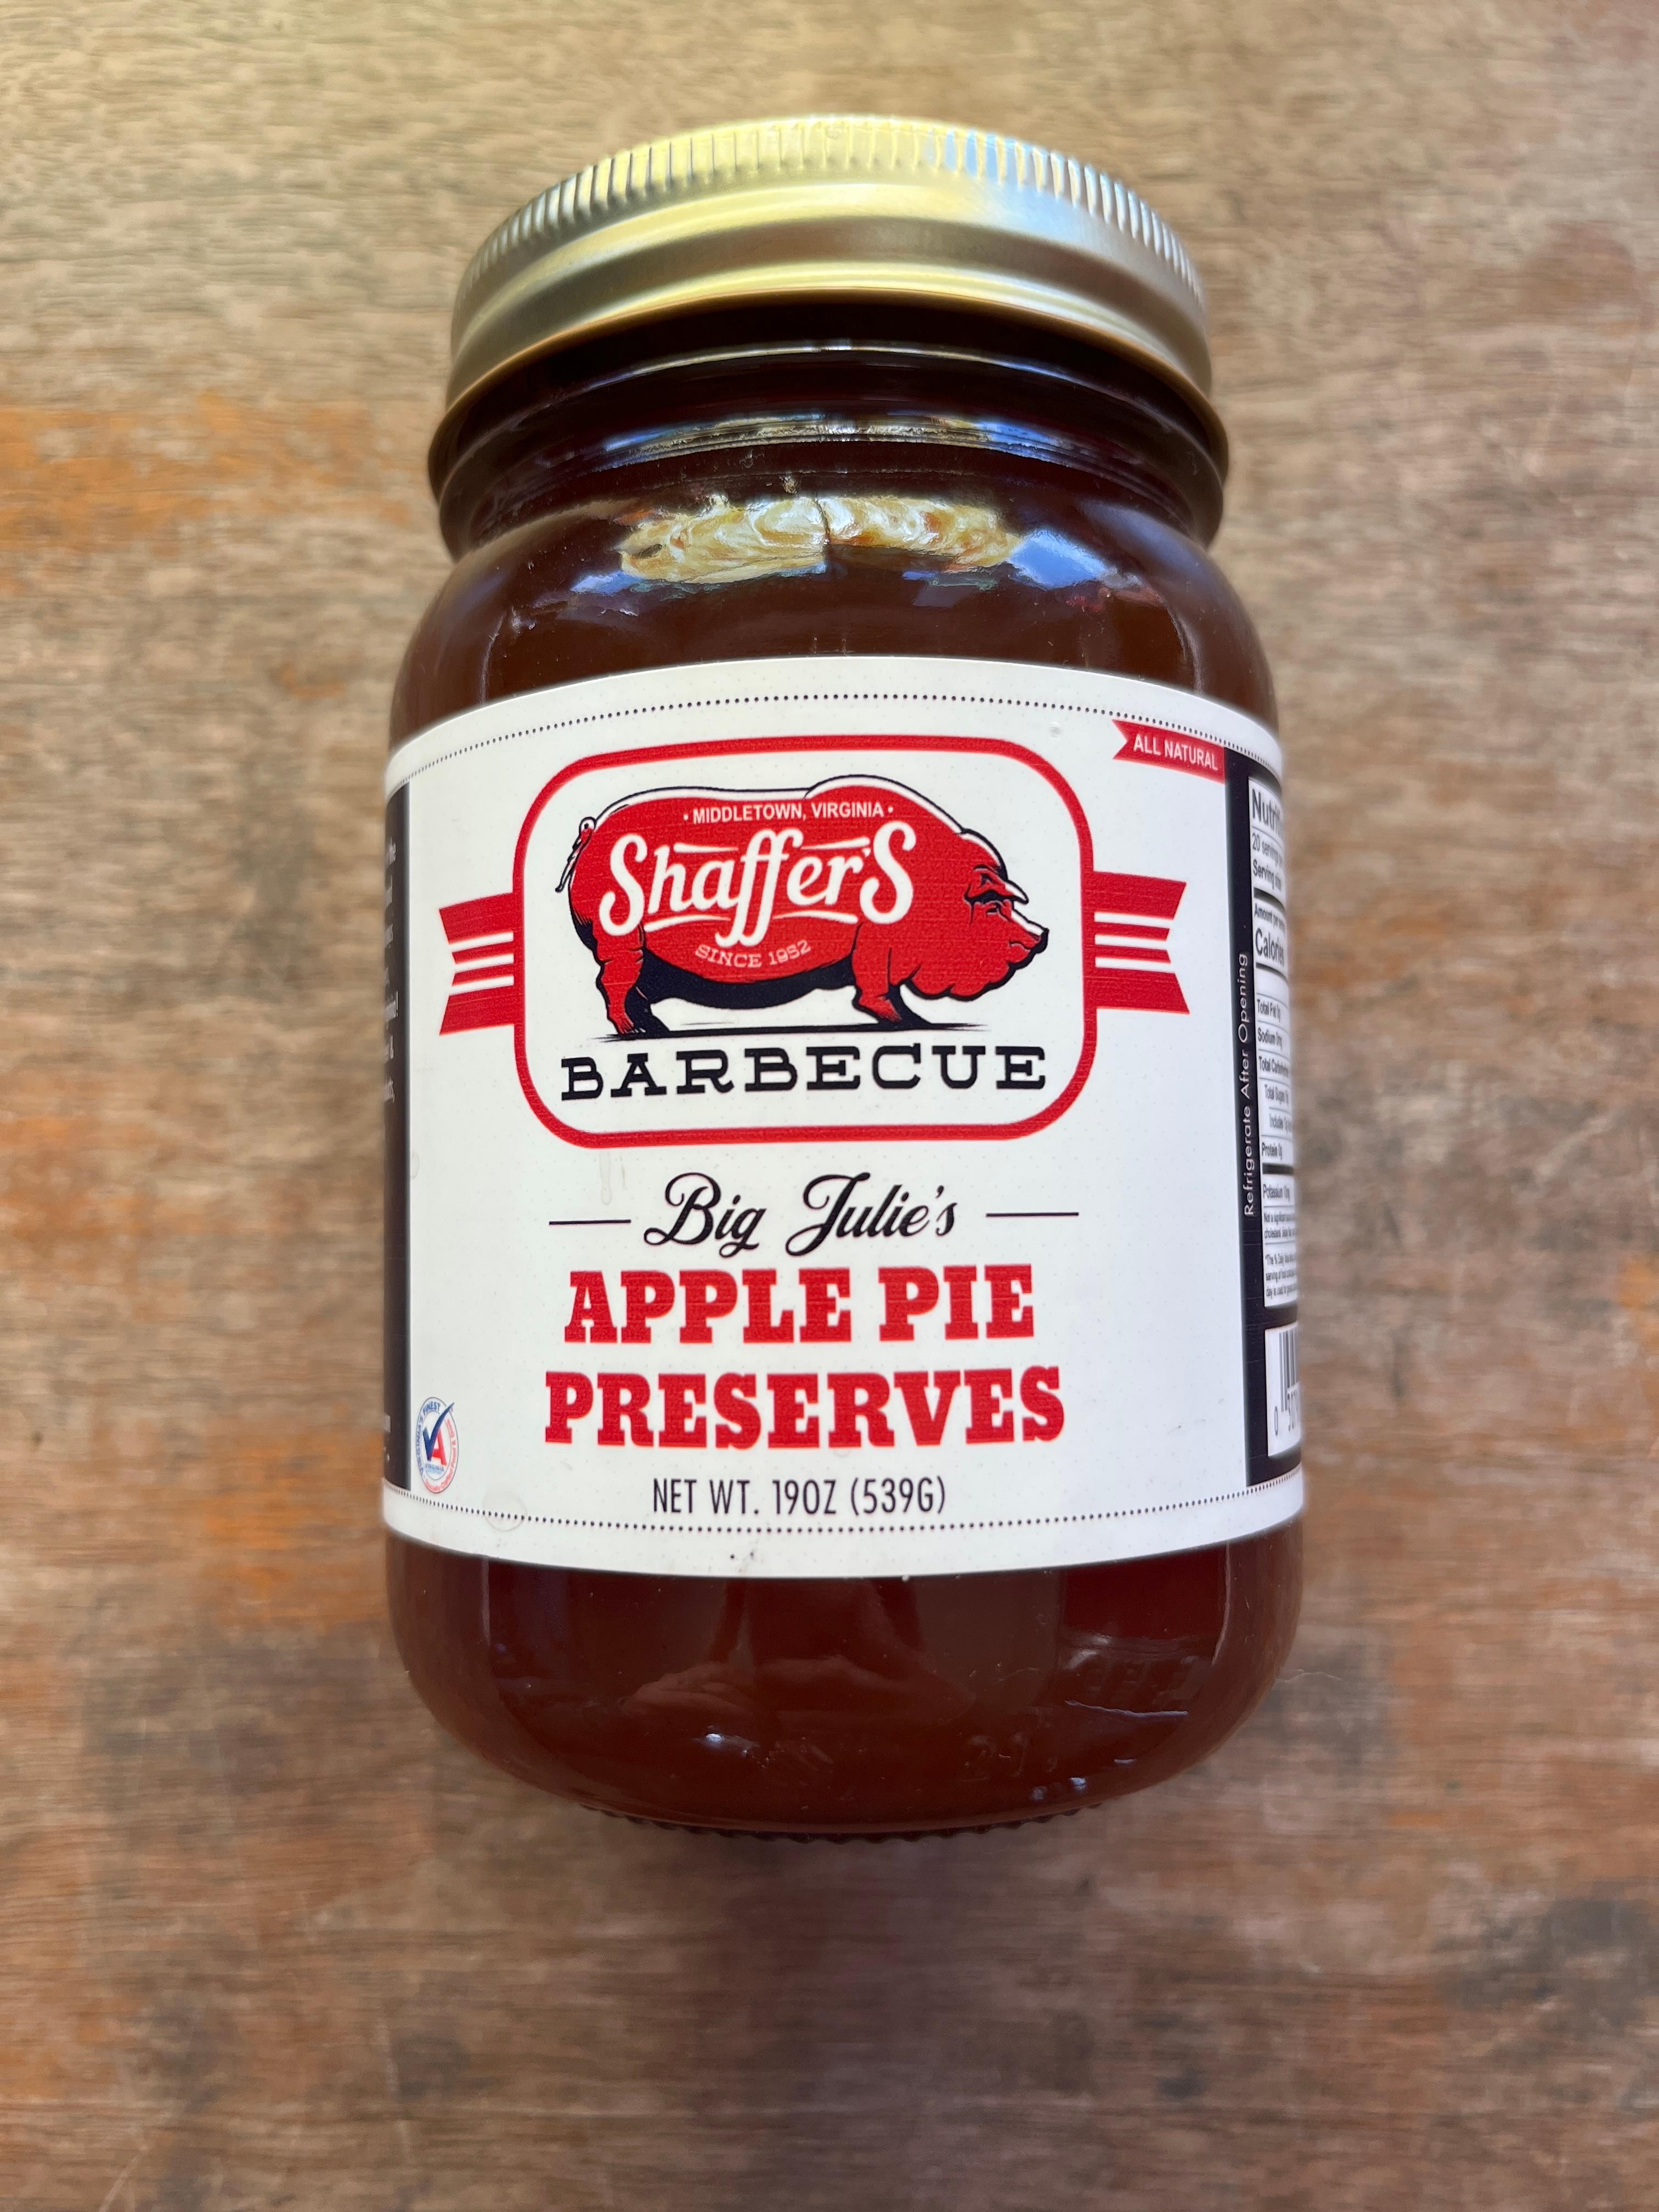 Big Julie's Apple Pie Preserves